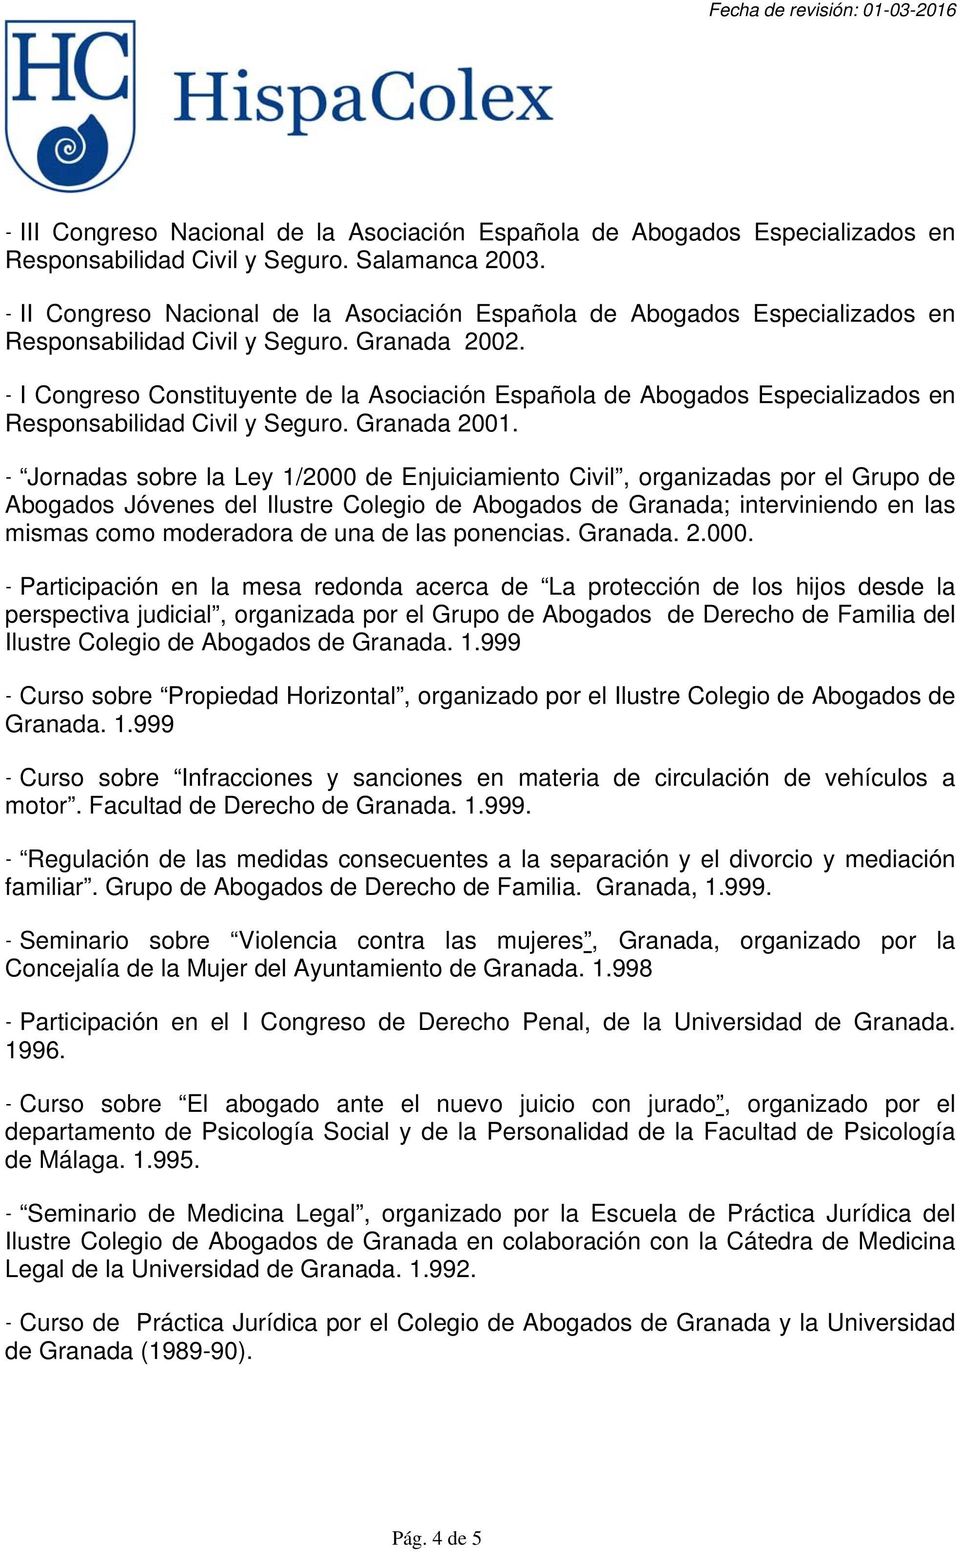 - I Congreso Constituyente de la Asociación Española de Abogados Especializados en Responsabilidad Civil y Seguro. Granada 2001.